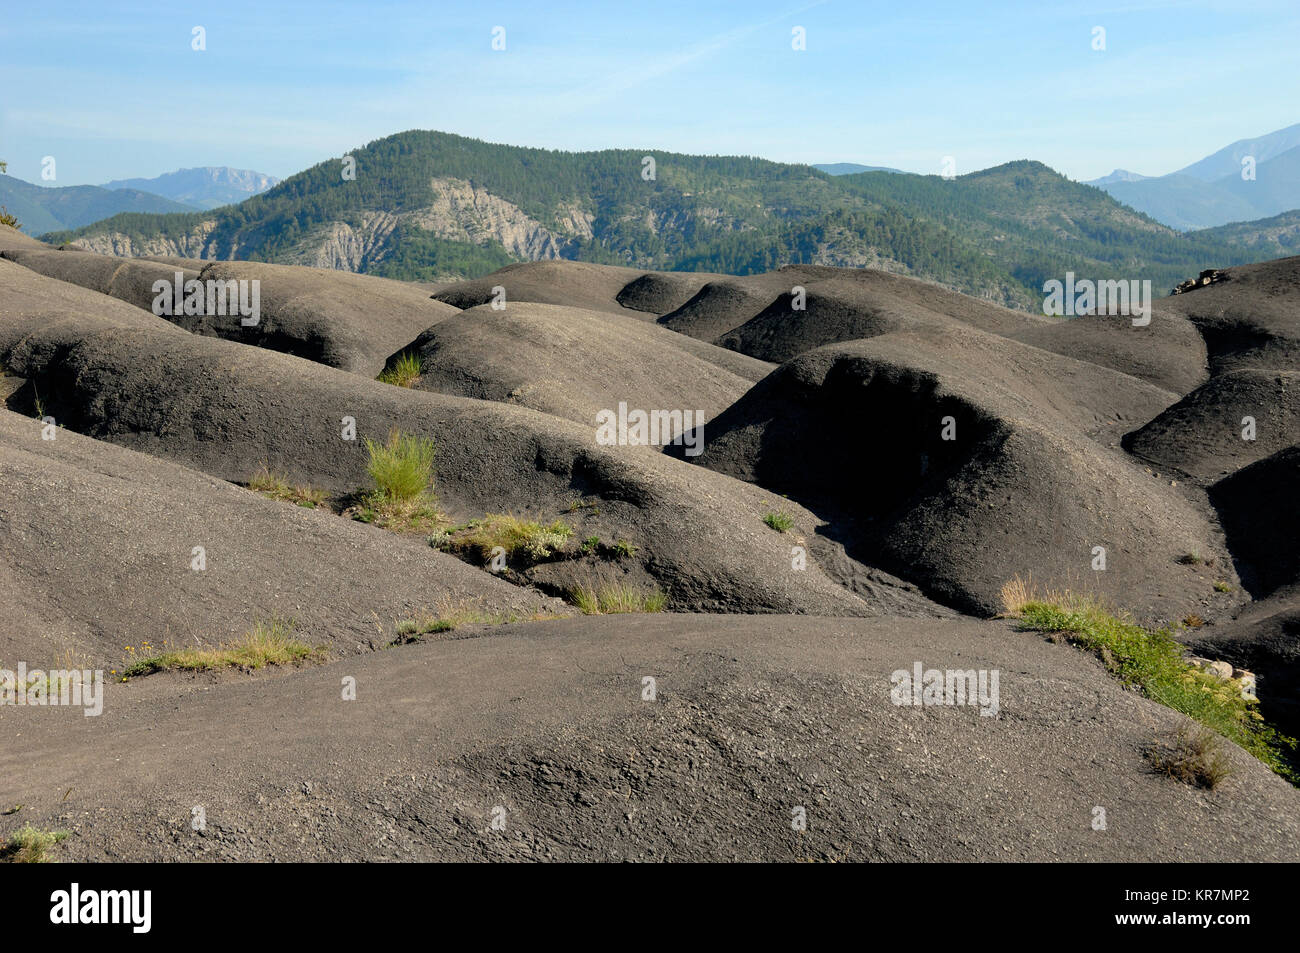 Paesaggio di nero formazioni di marna o Marlstone noto come Robines, nella riserva Geologique de Haute Provence Geopark, vicino a Digne-les-Bains, Francia Foto Stock